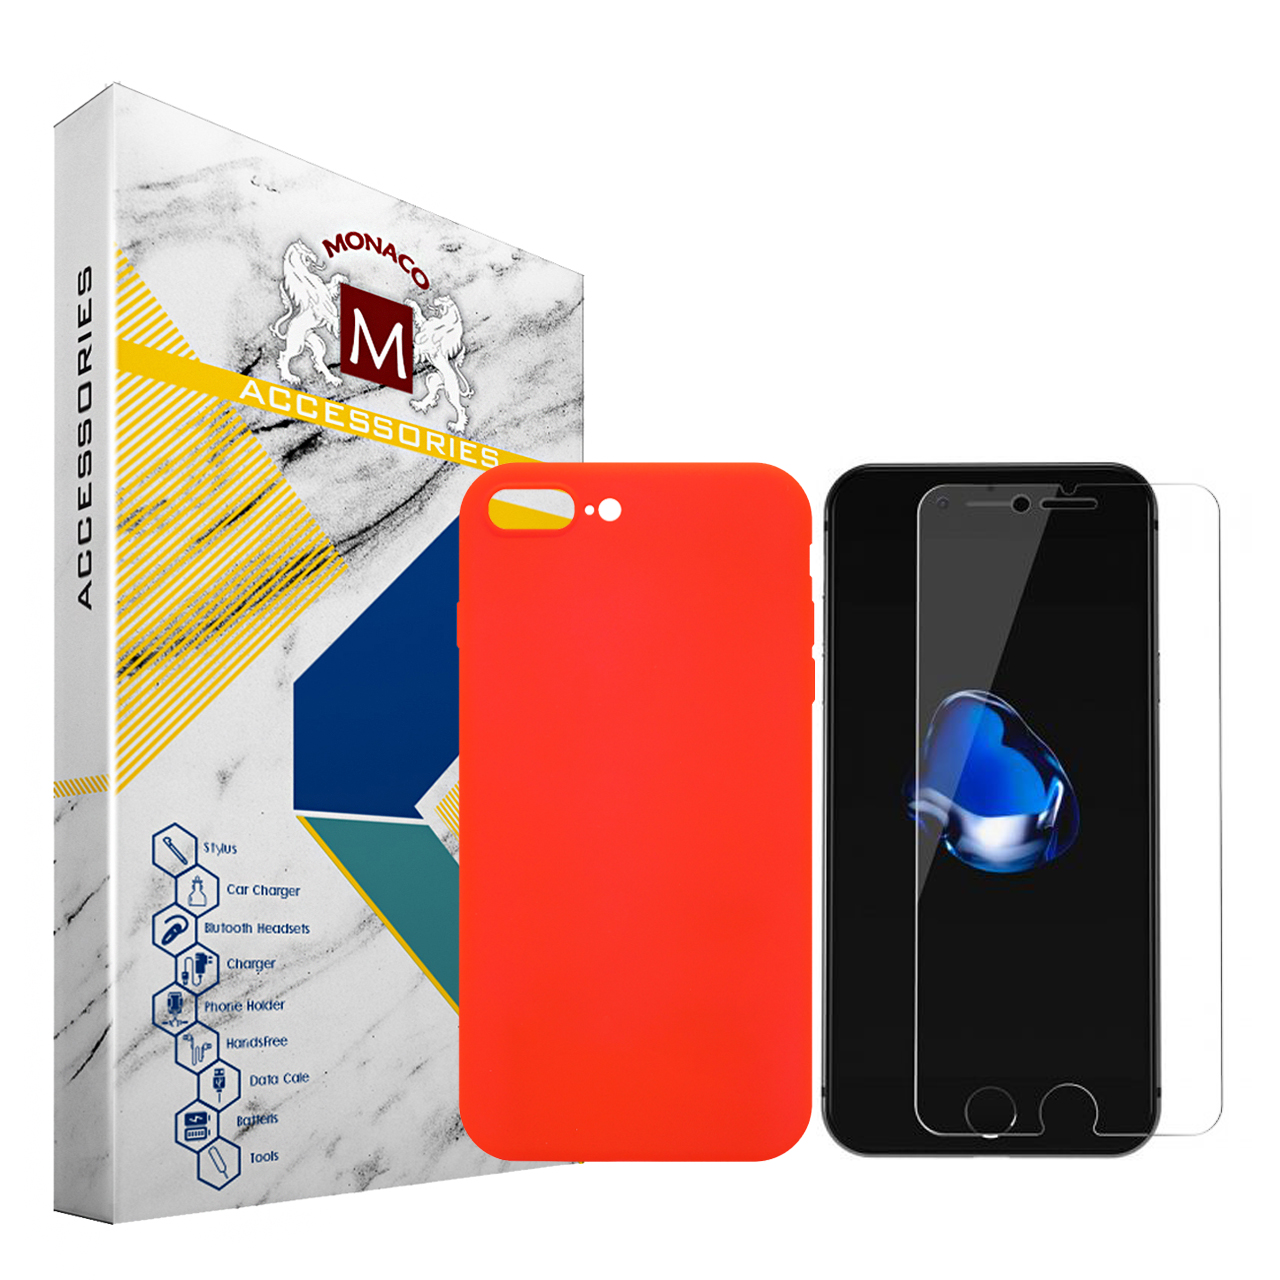 کاور موناکو مدل Sn337 مناسب برای گوشی موبایل اپل iPhone 7 plus به همراه محافظ صفحه نمایش